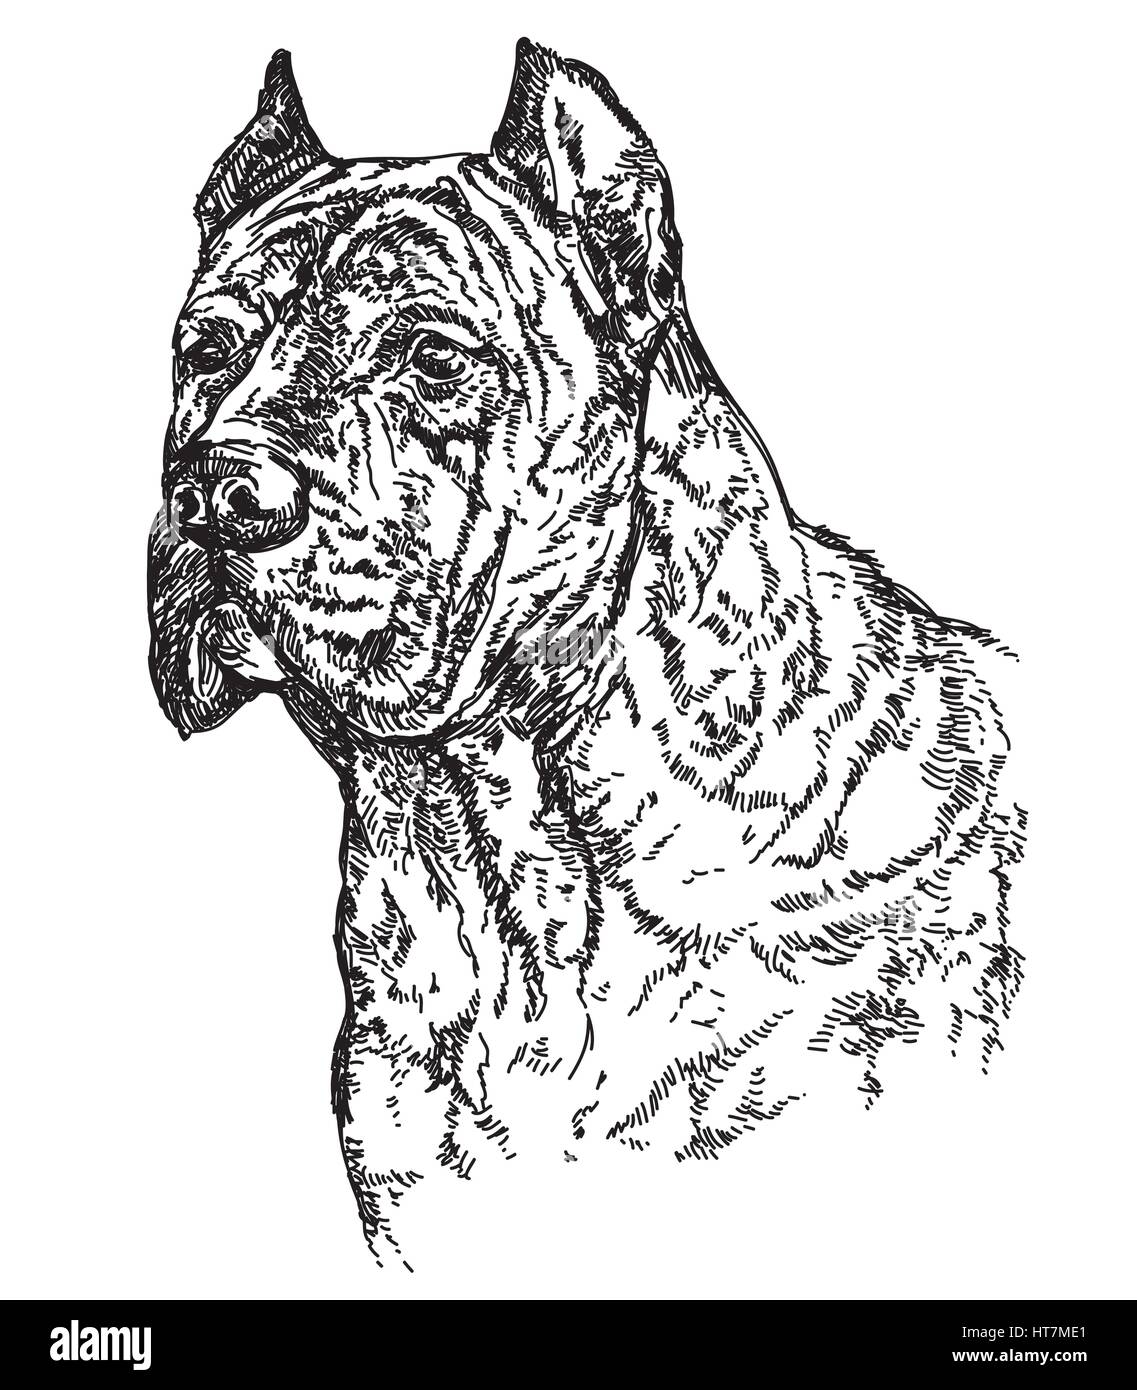 Cane Corsa Hundekopf im Profil Vektor hand Zeichnung illustration Stock Vektor